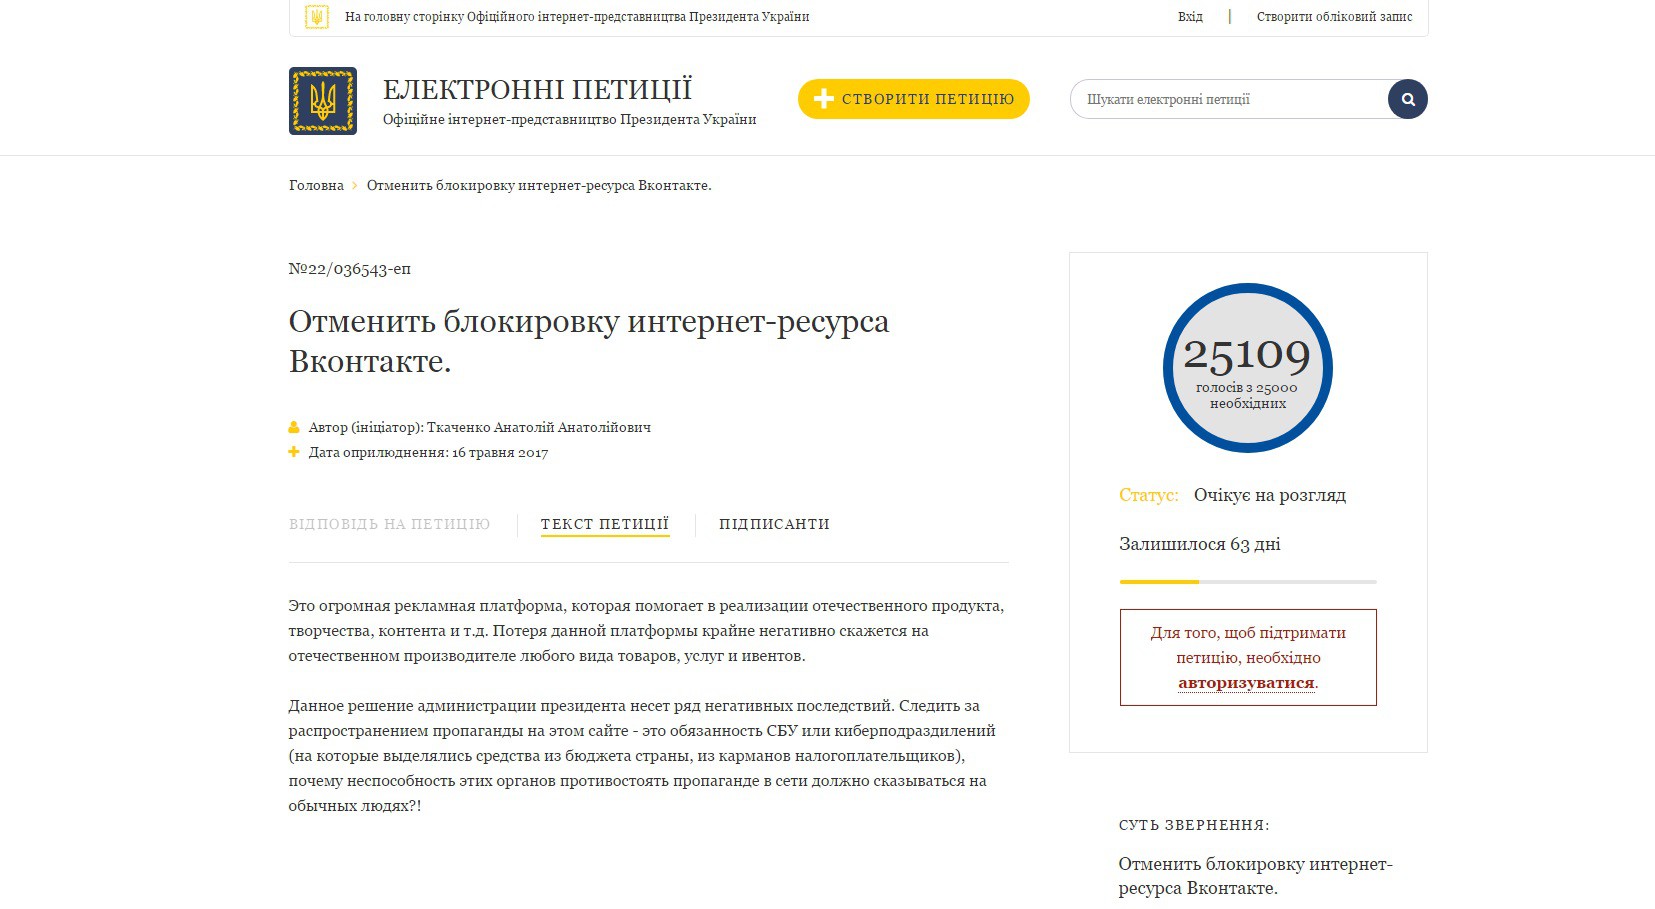 Петиция об отмене запрета 'ВКонтакте' набрала более 25 тыс. подписей